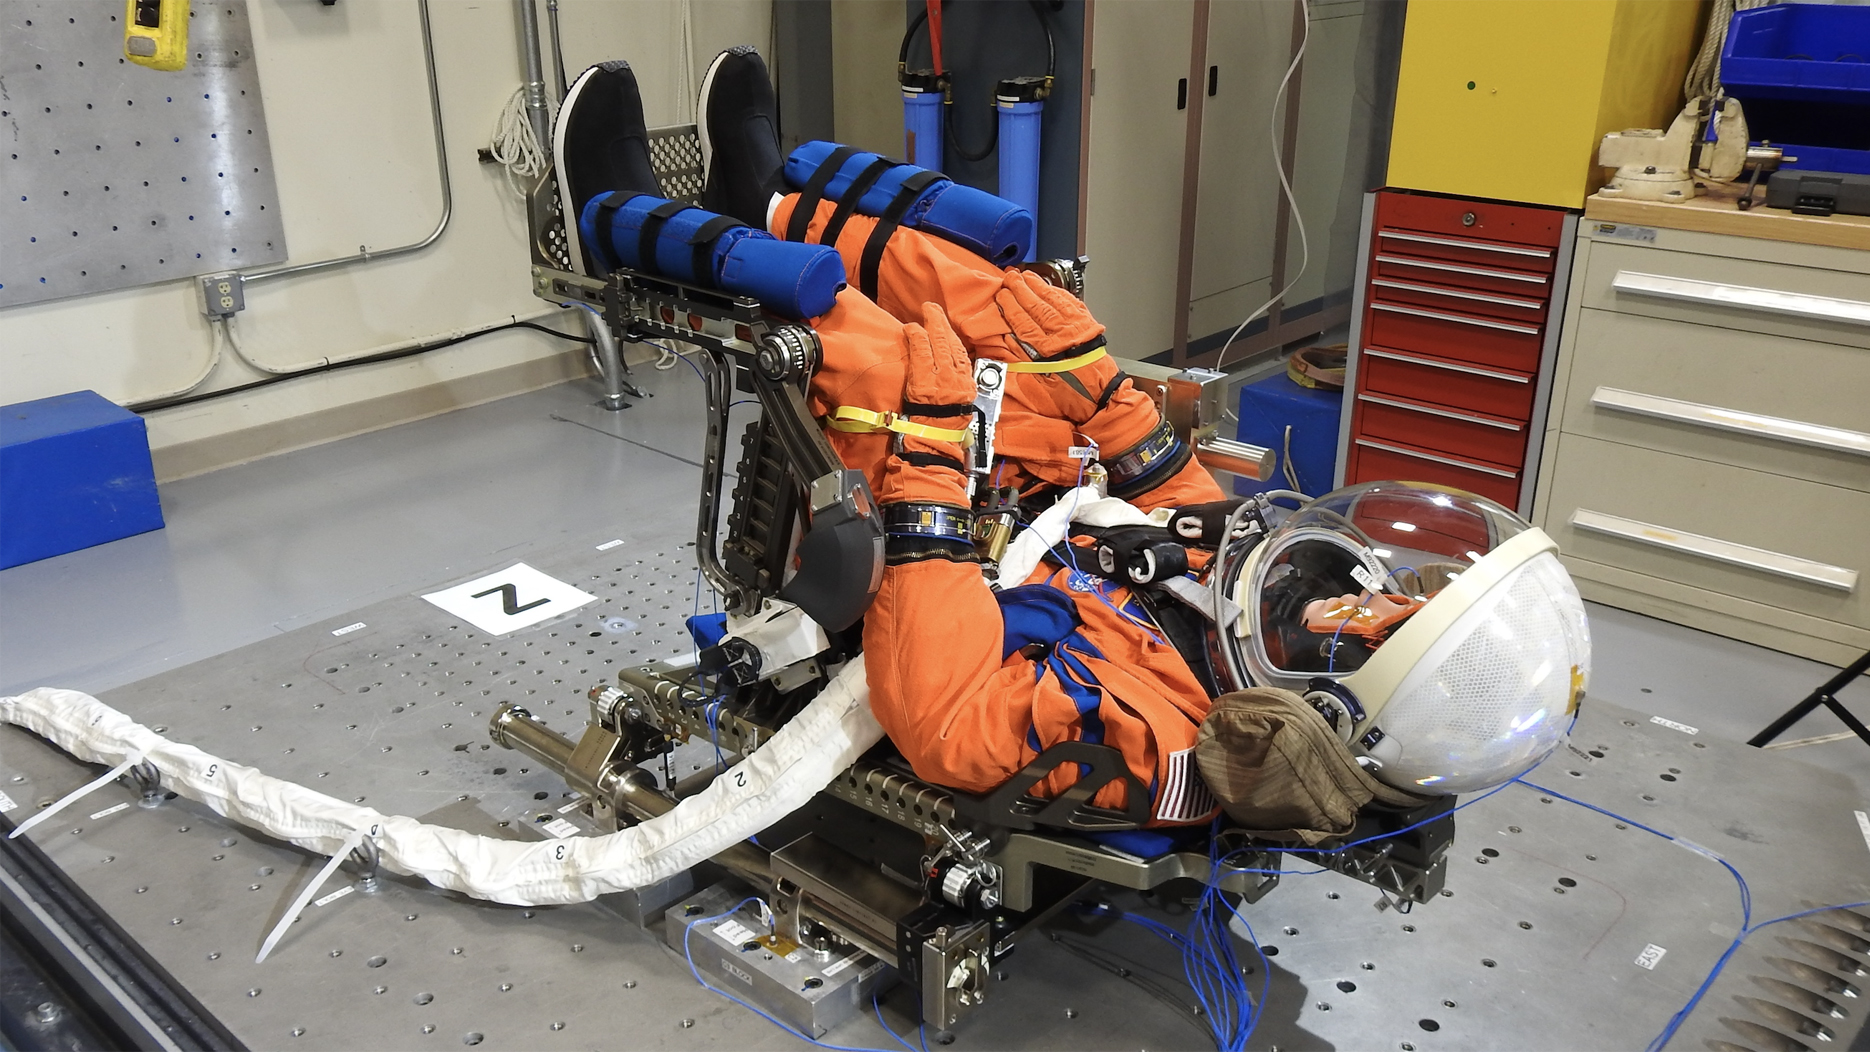 de la NASA "lunaikin" Maniquí con traje espacial naranja sentado en posición de lanzamiento.